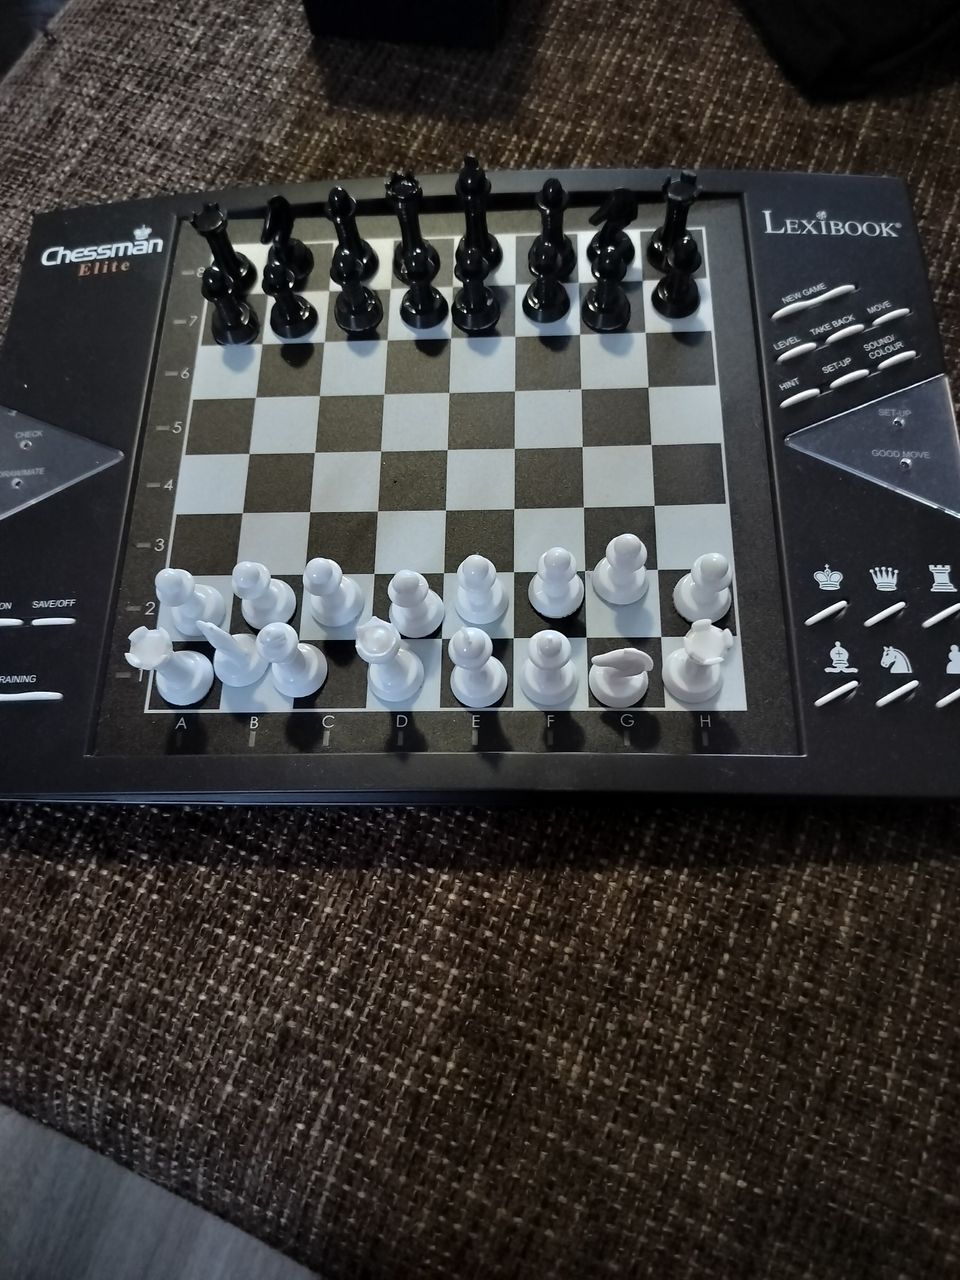 Chessman Elite Sähköinen Shakkipeli